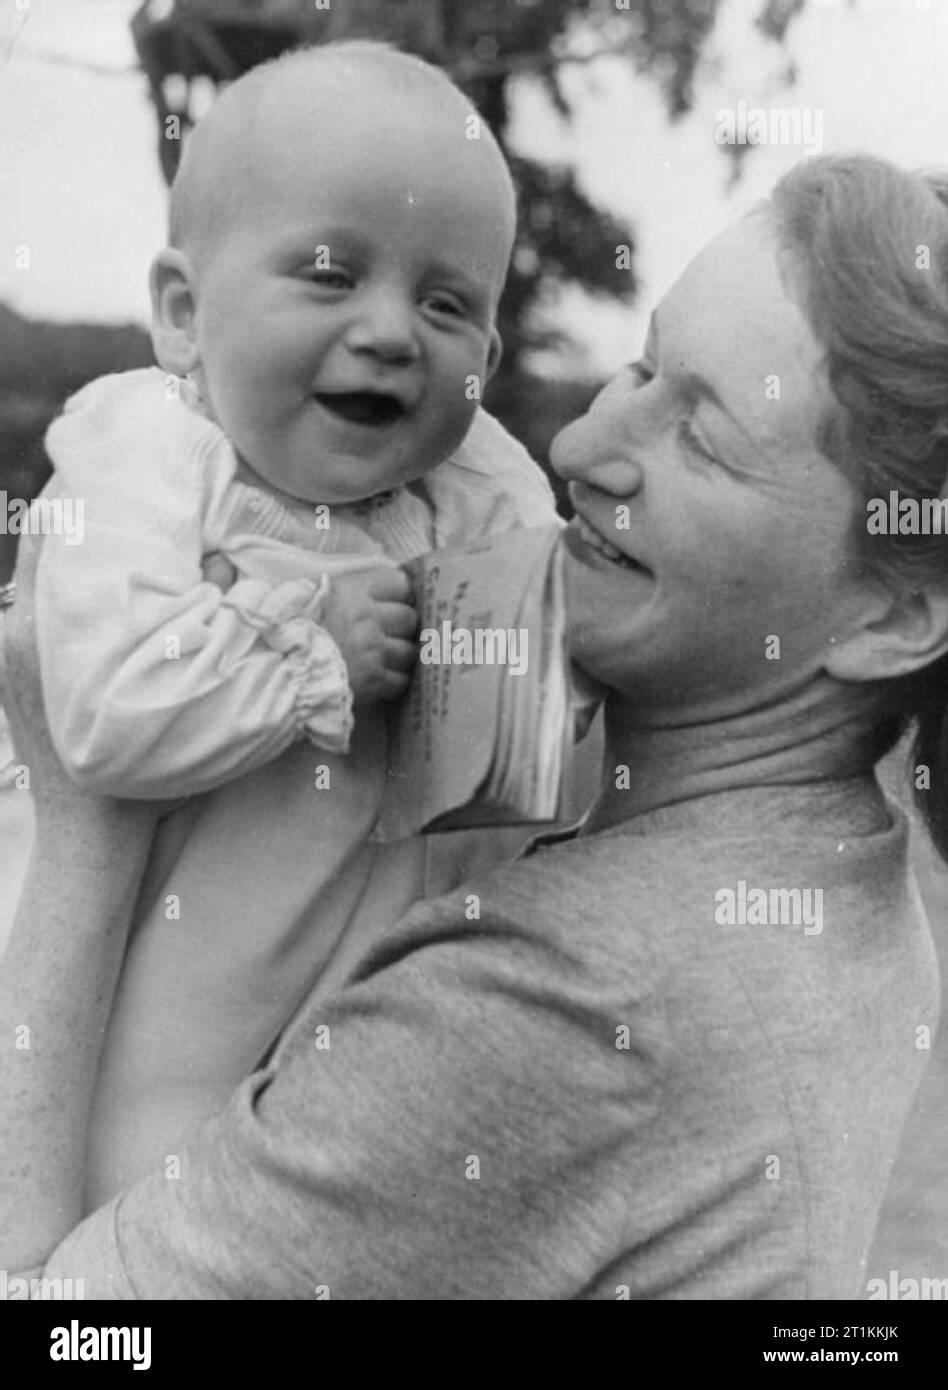 A Village Saves- National Savings in Lewknor, Oxfordshire, England, 1941 Ein Porträt eines lächelnden John Andrew, im Alter von 6 Monaten, mit seiner Mutter. John ist sein Gewicht in Gold Wert, da er 18 Pfund wiegt und über nationale Sparzertifikate im Wert von 18 Pfund verfügt. Stockfoto